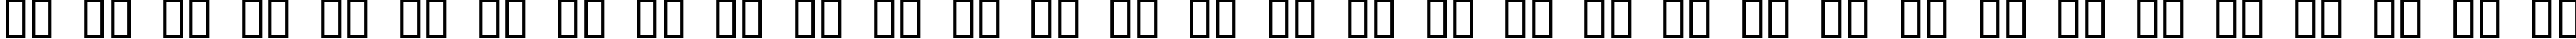 Пример написания русского алфавита шрифтом Edistys